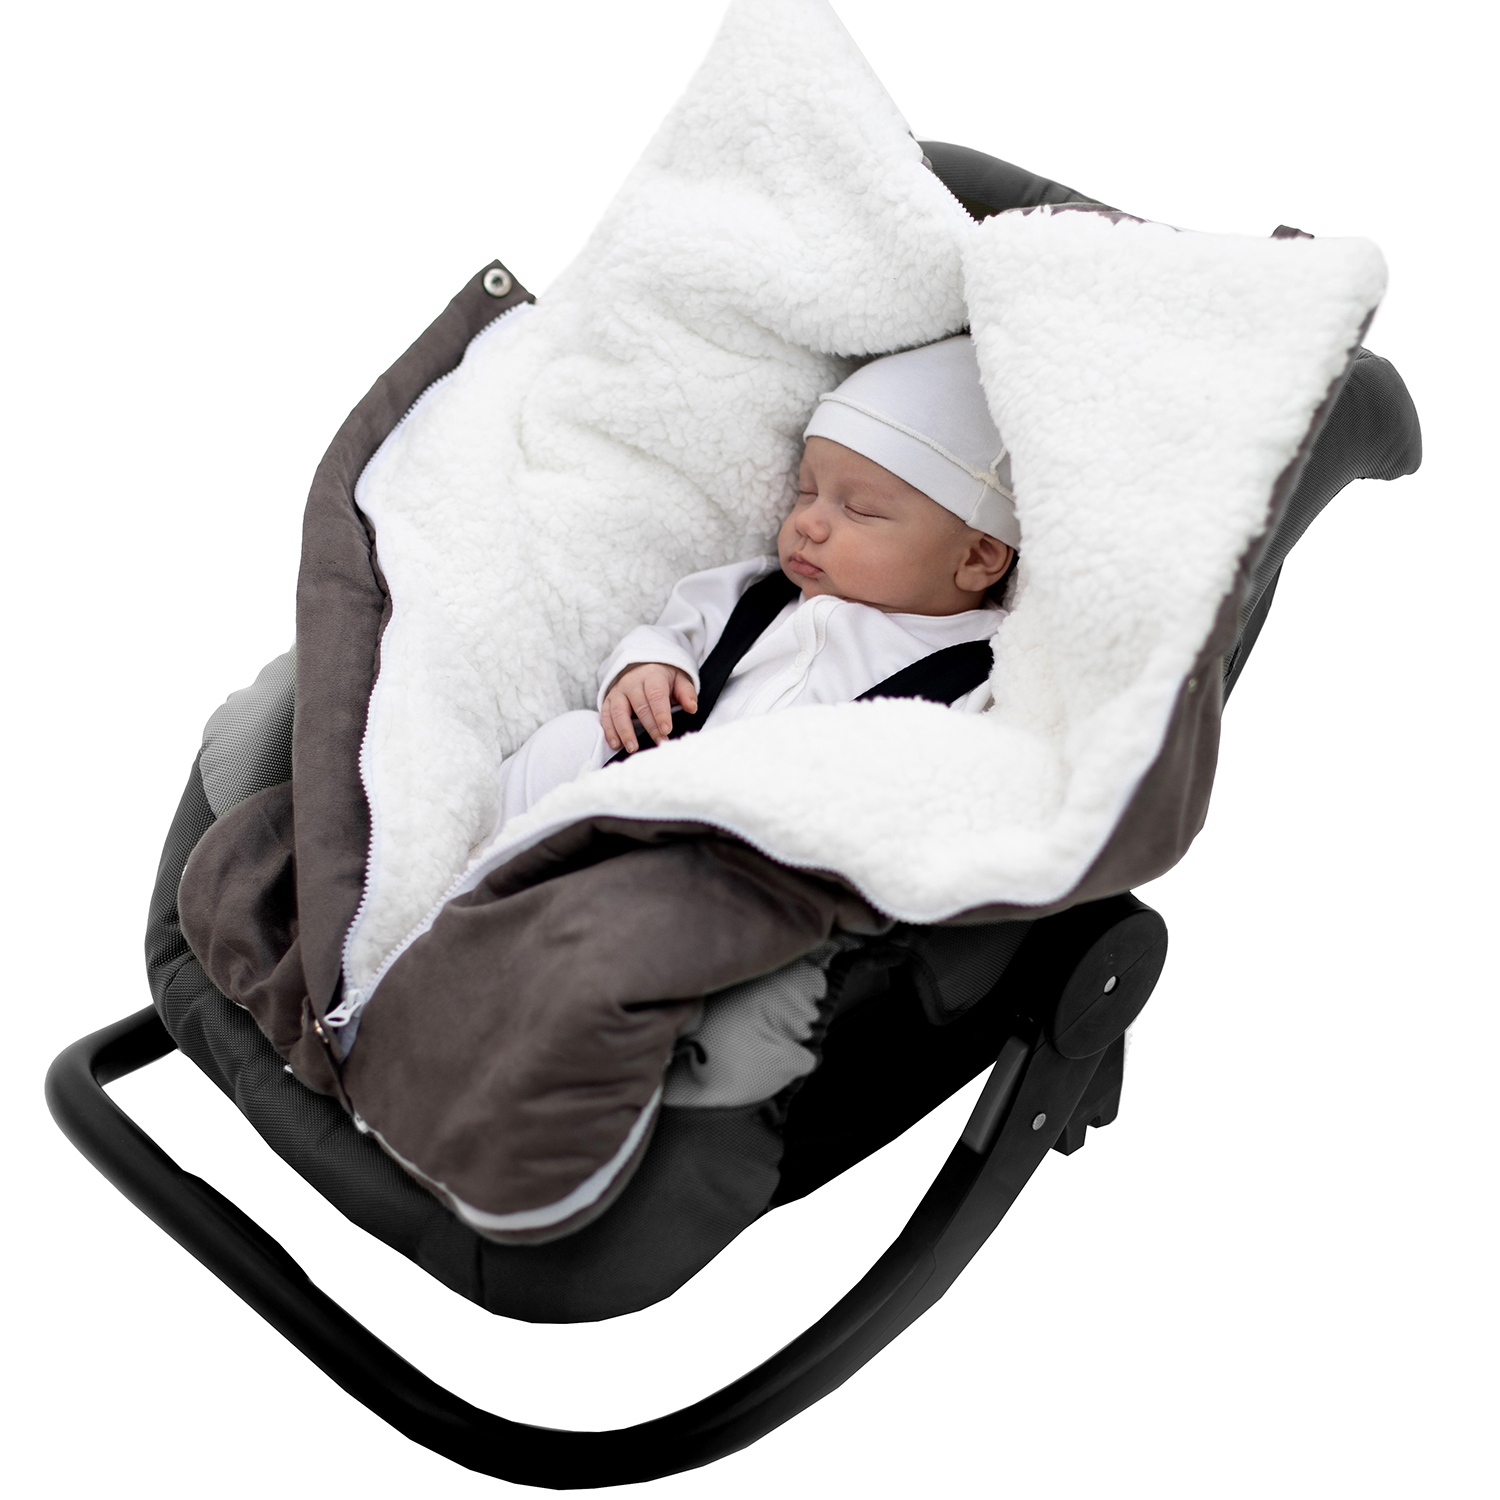 Конверт в коляску inlovery для новорожденного «Нортес» серый - фото 10